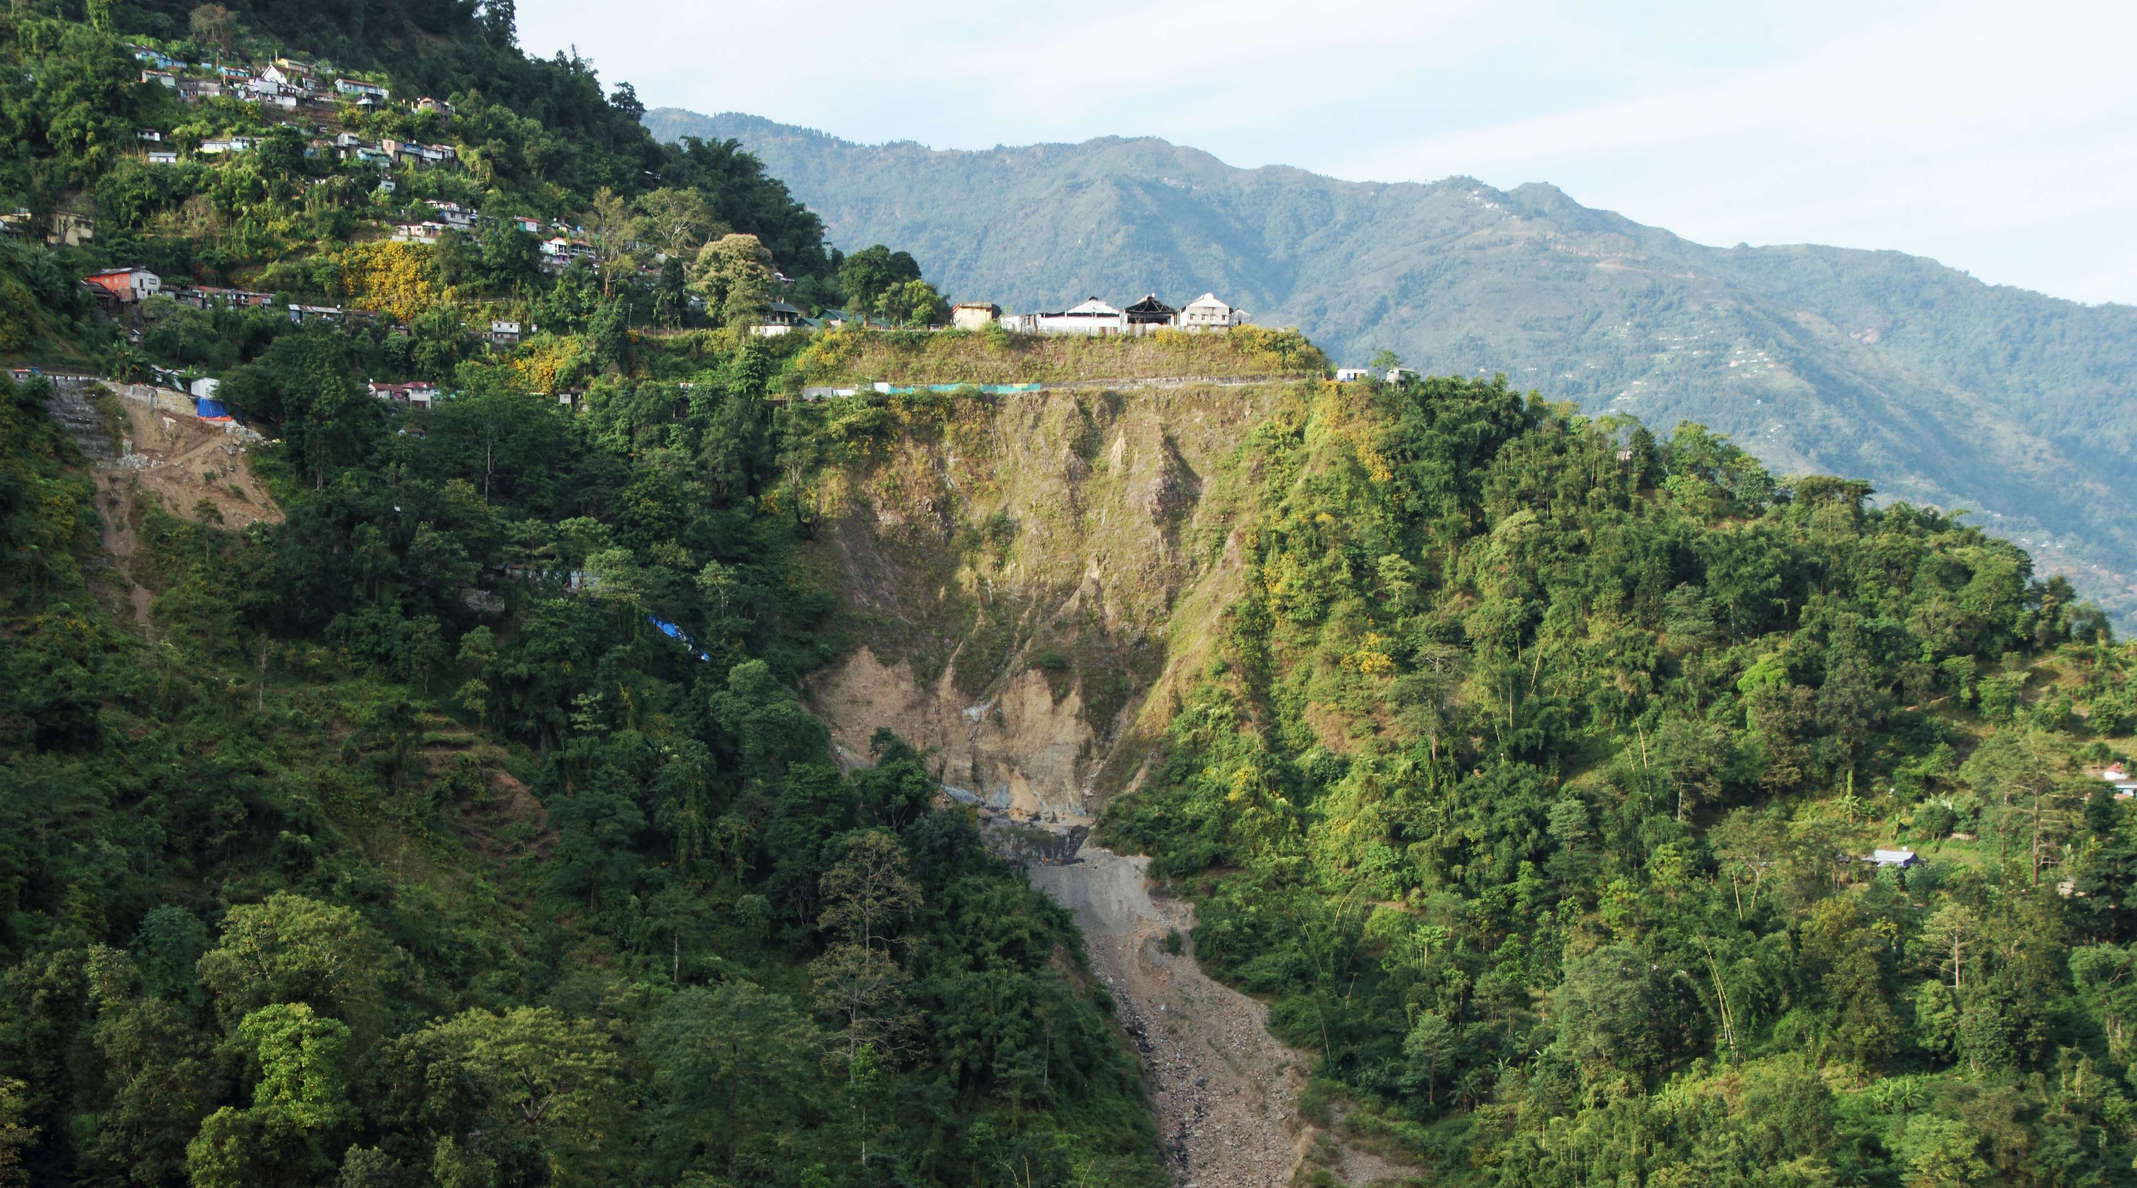 Tindharia Landslide